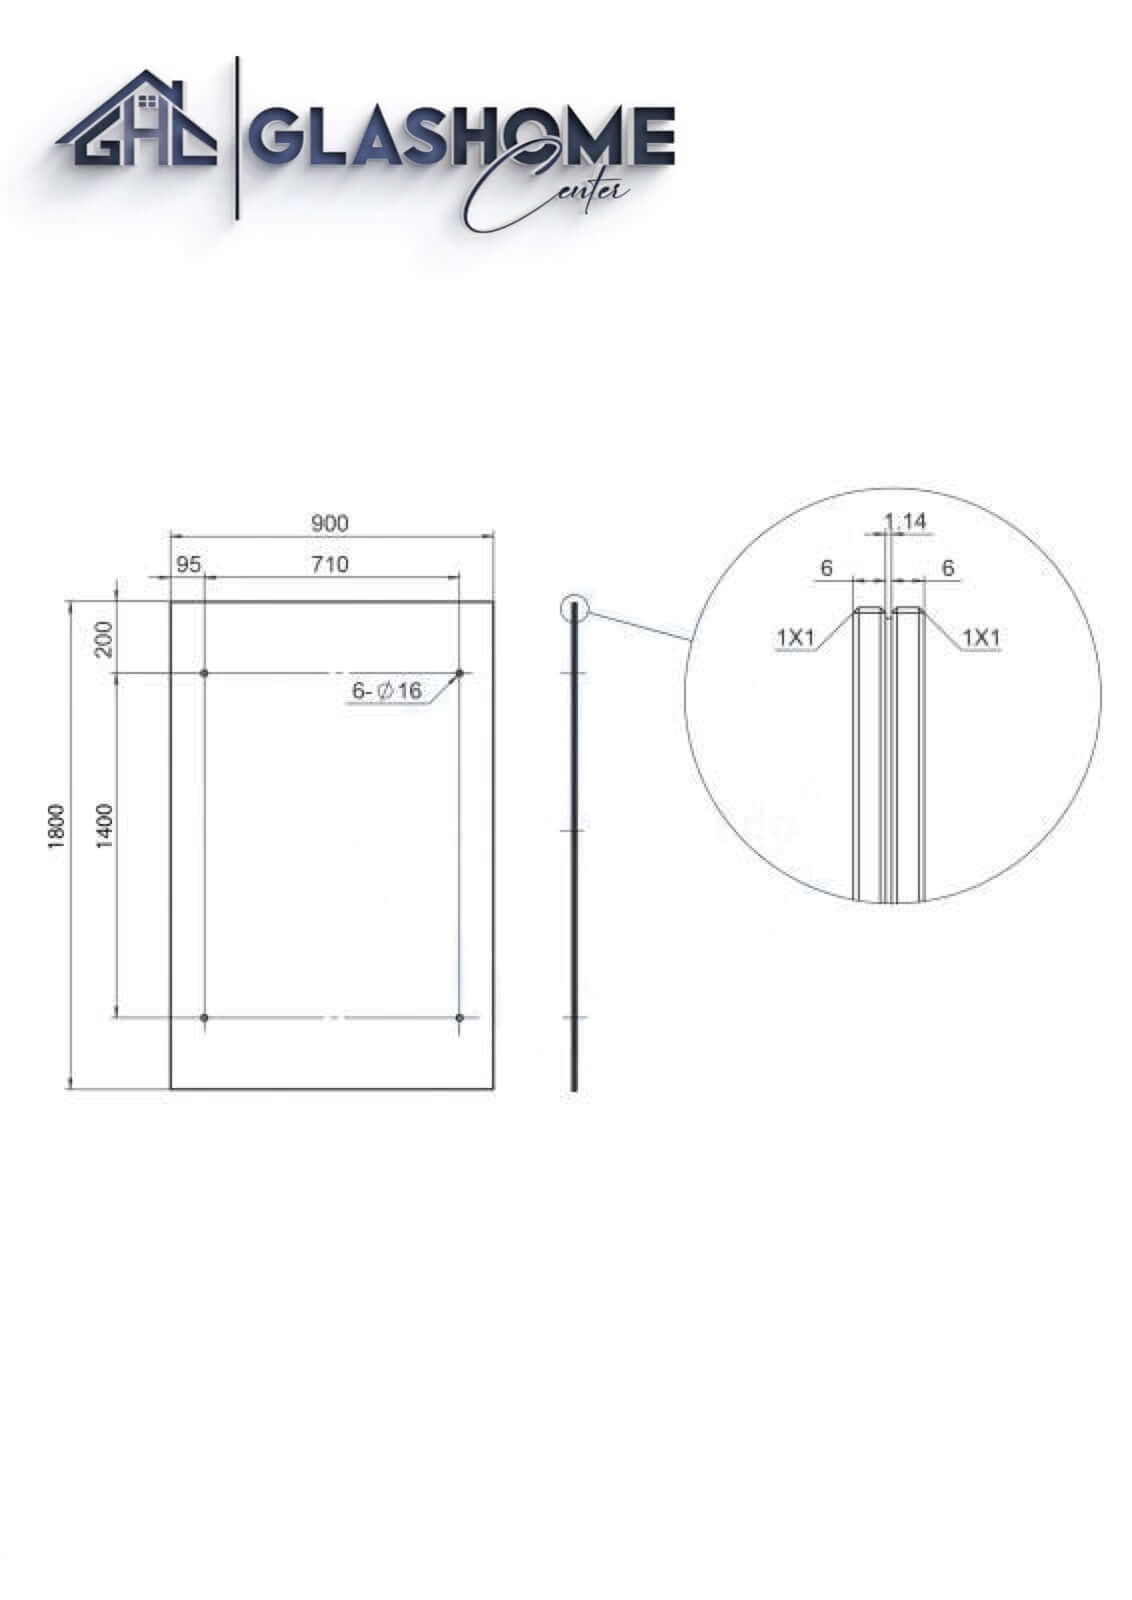 GlasHomeCenter - Glasvordach - Milchglas - 200x90cm - 13.1mm VSG - inkl. 2 Edelstahlhalterungen Variante "Rom"